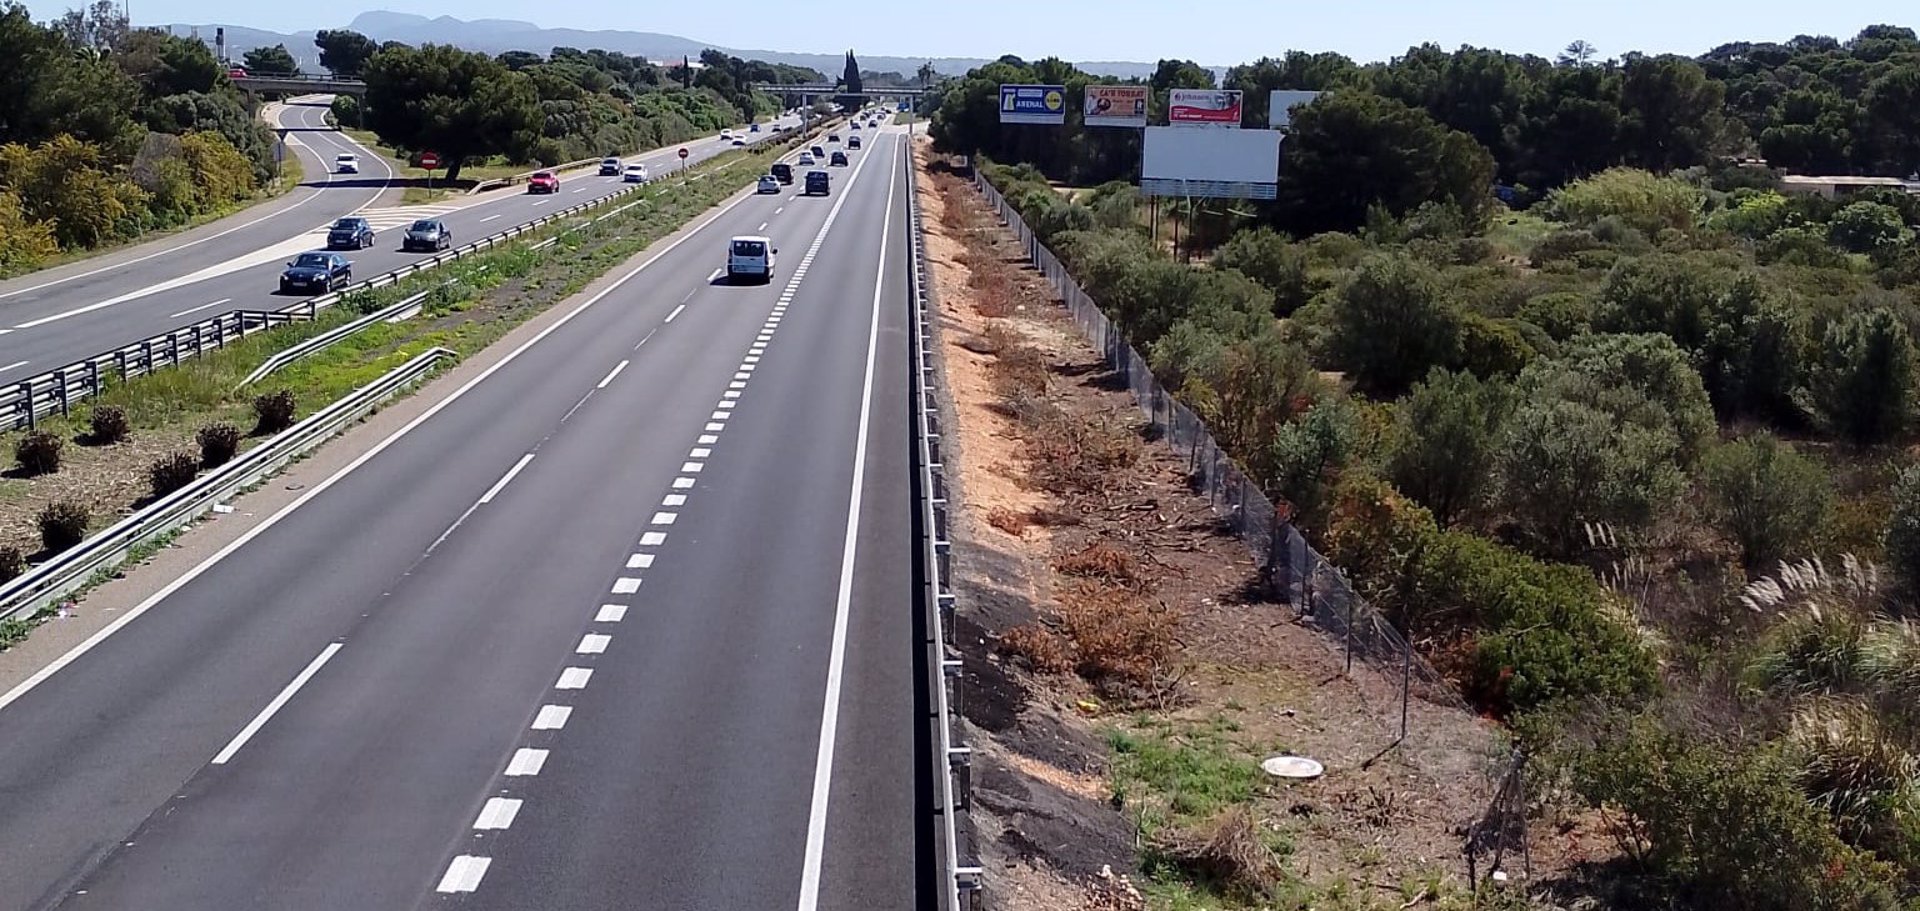 Vehículos circulando en un tramo de la carretera Ma-19 de Mallorca. - CONSELL DE MALLORCA